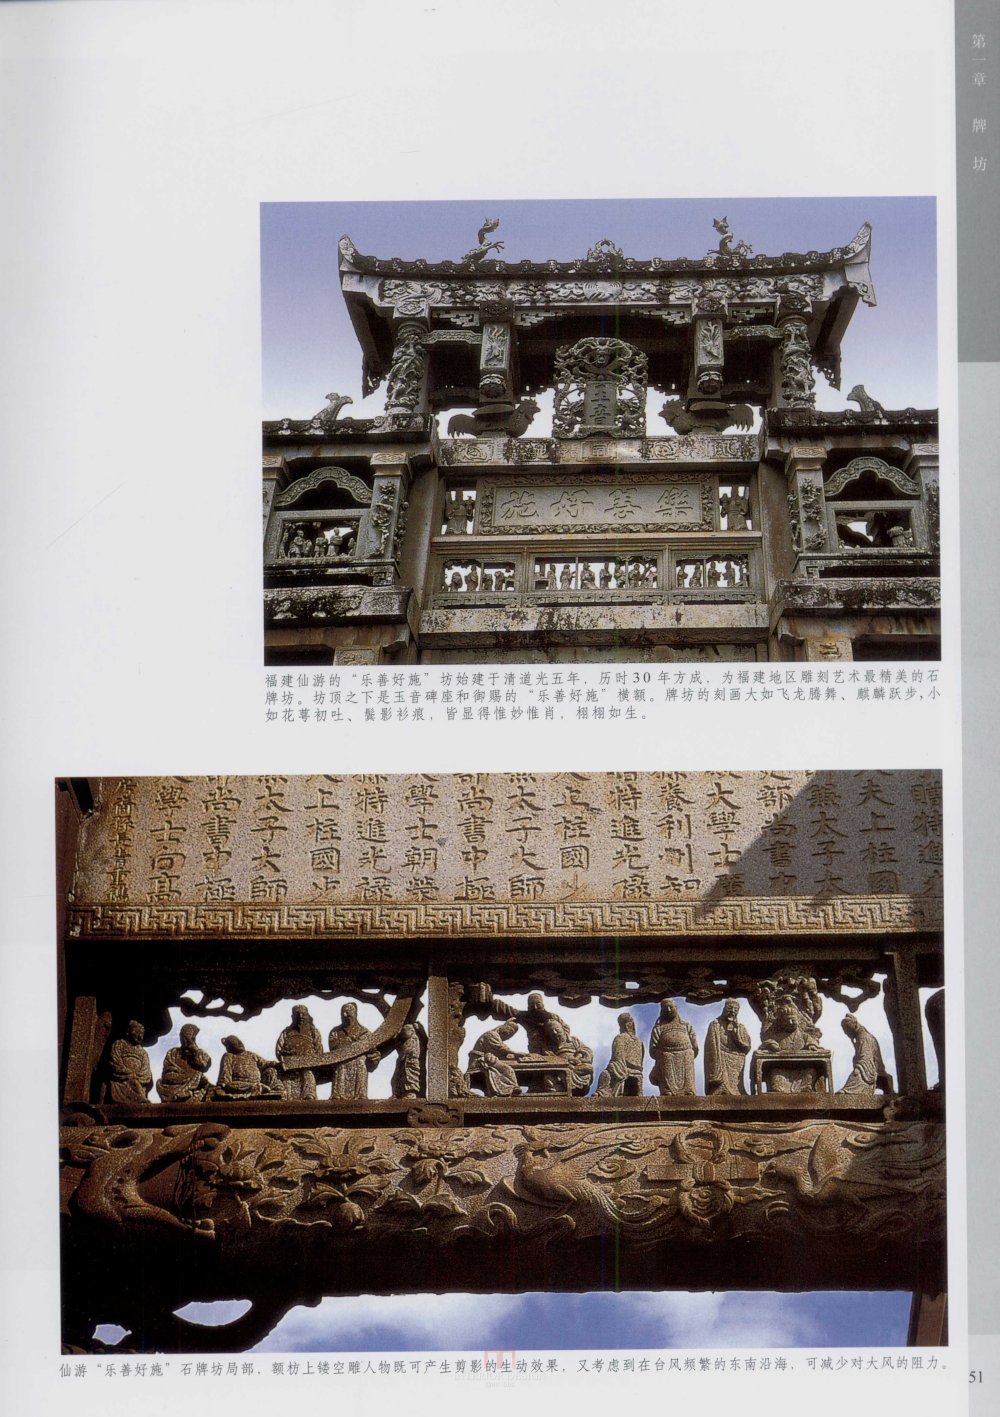 中国古代建筑 石雕_kobe 0059.jpg